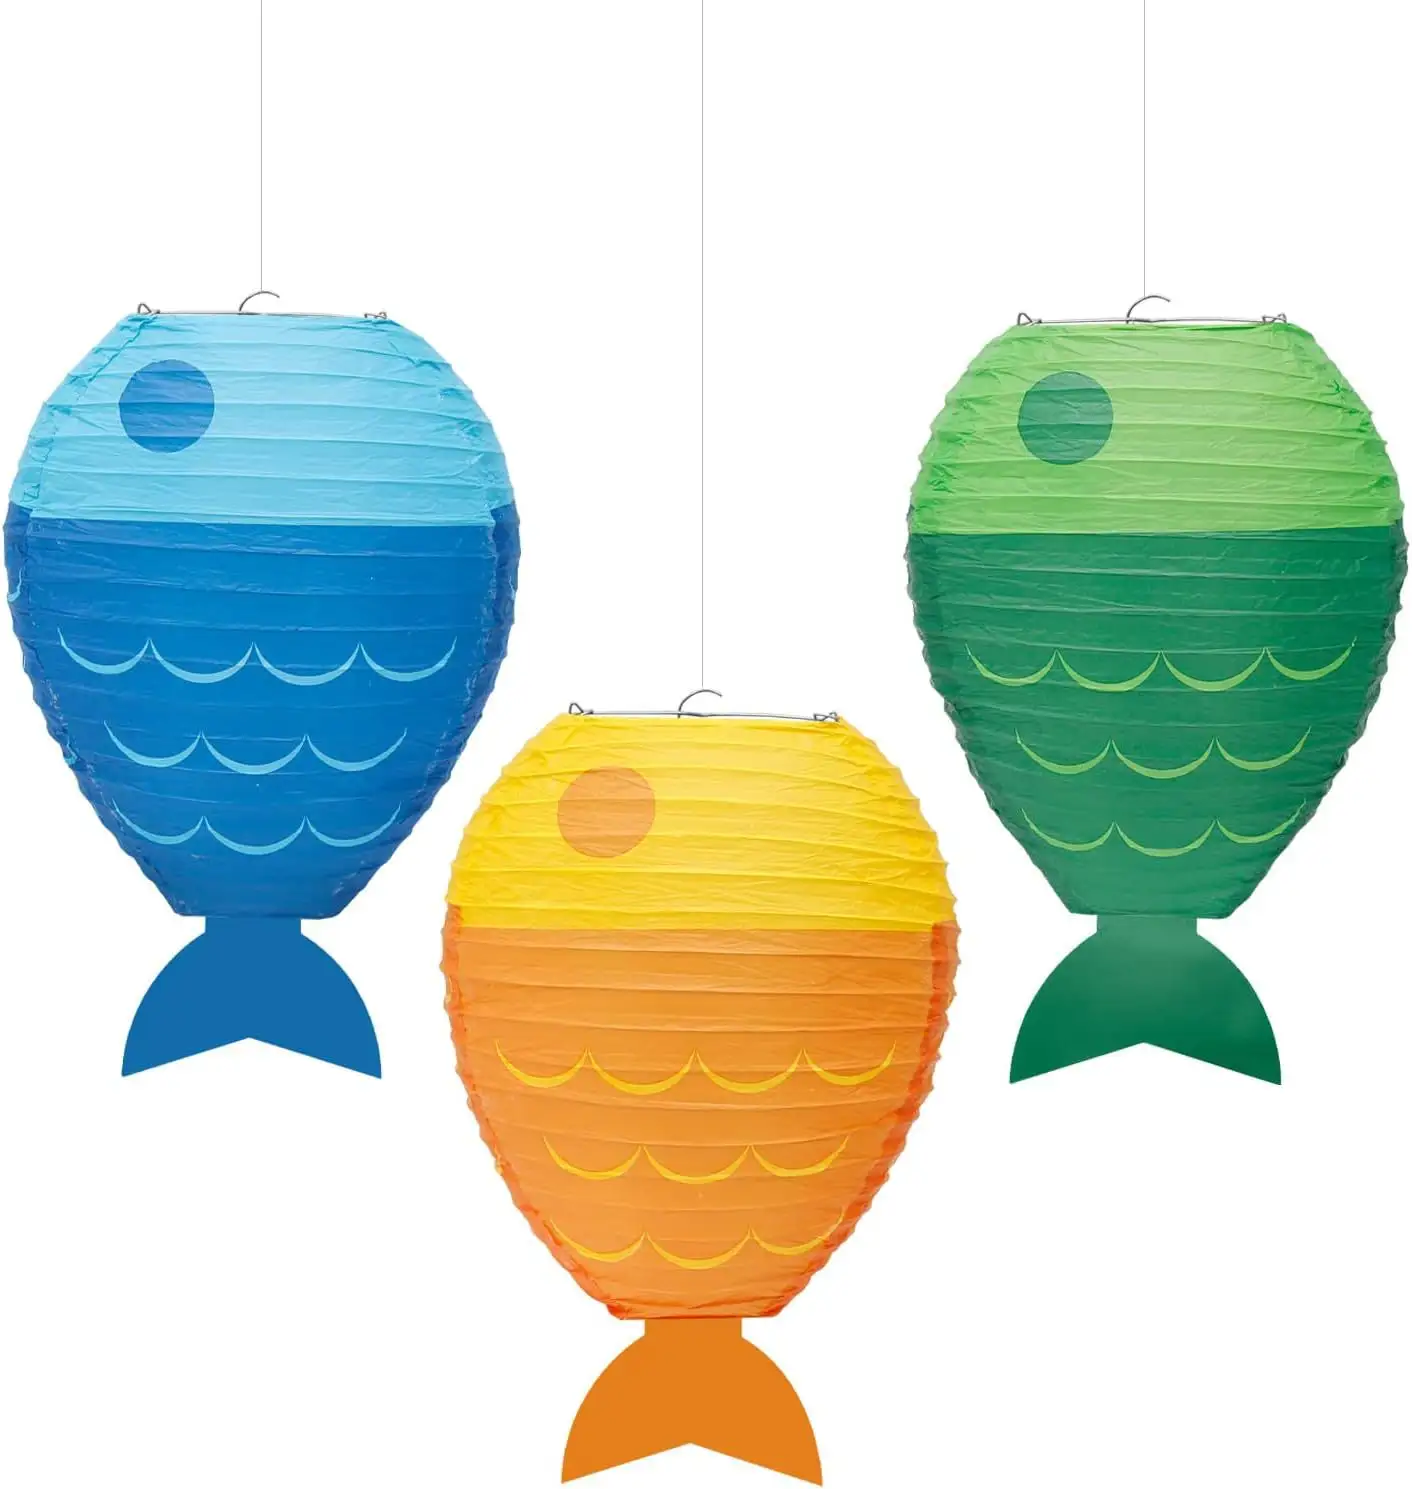 Nuevo diseño 25cm forma de pez linterna de papel al por mayor linternas de papel diy para favores de fiesta